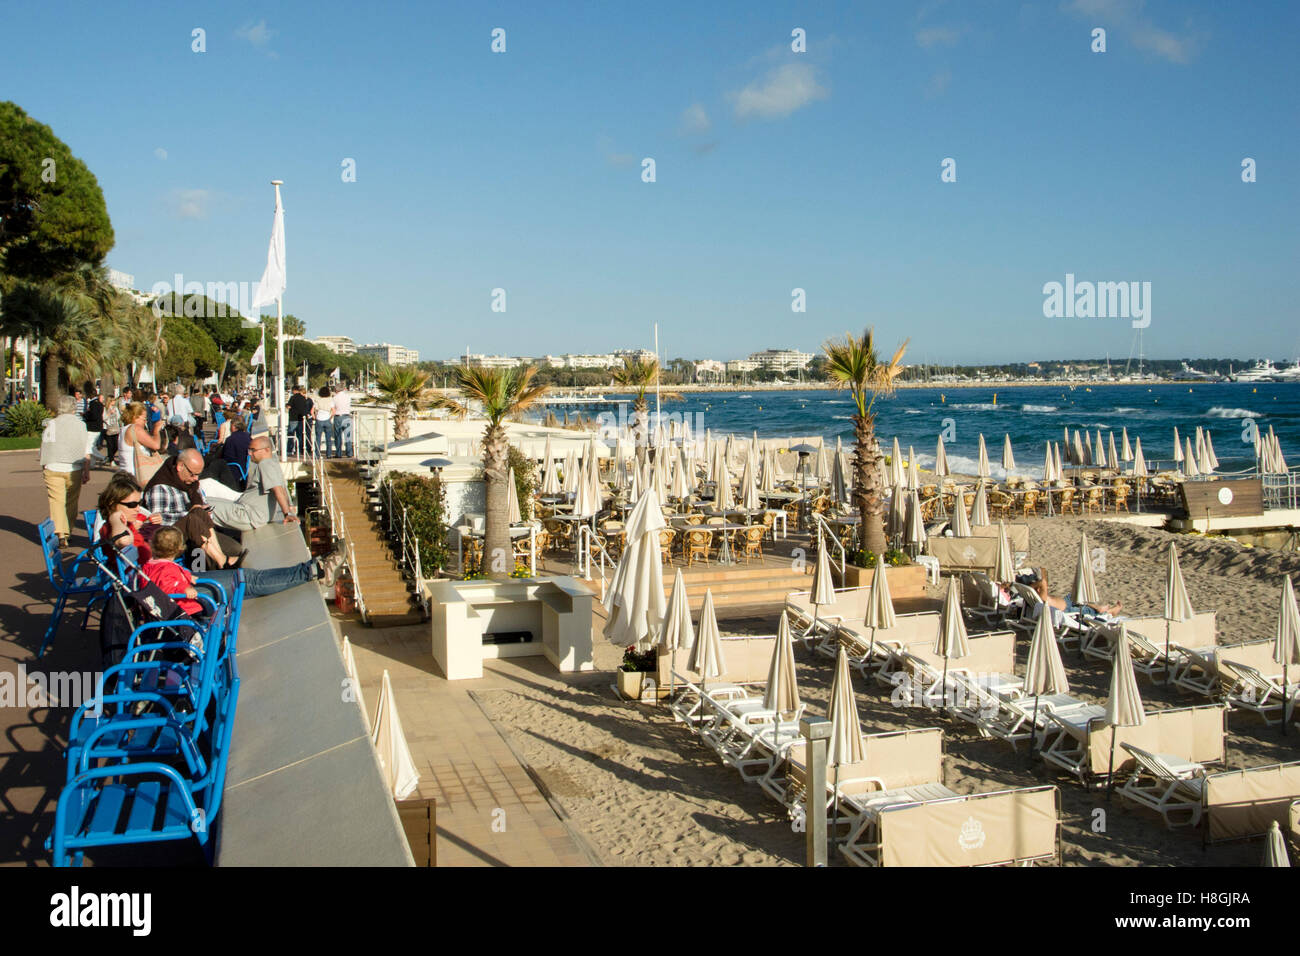 Frankreich, Cote d Azur, Cannes, Flaniermeile Boulevard de la Croisette und Stadtstrand Foto Stock